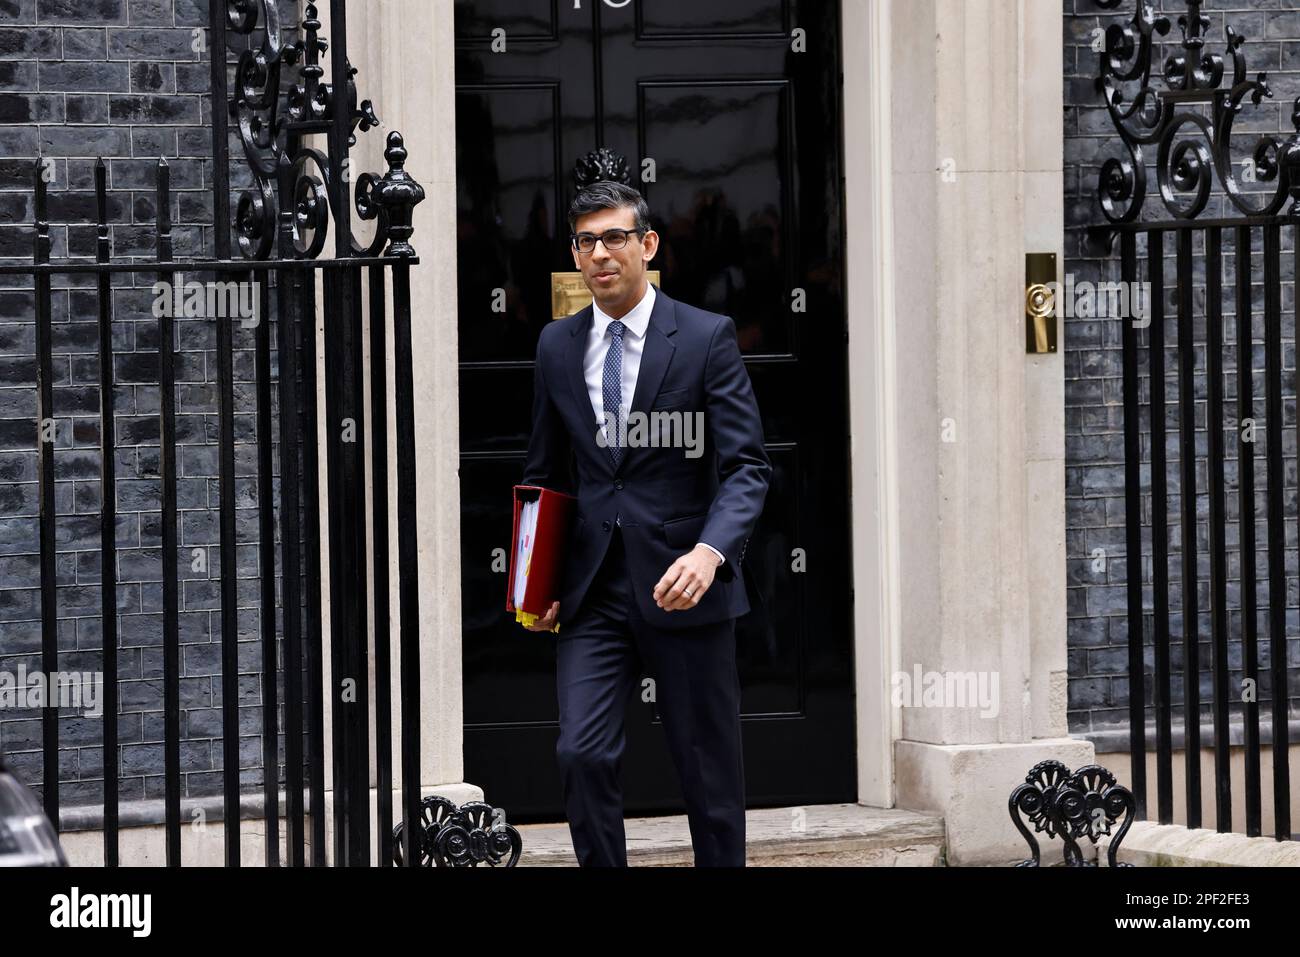 Angleterre, Londres, le premier ministre conservateur quitte la porte du numéro 10 Downing Street. Banque D'Images